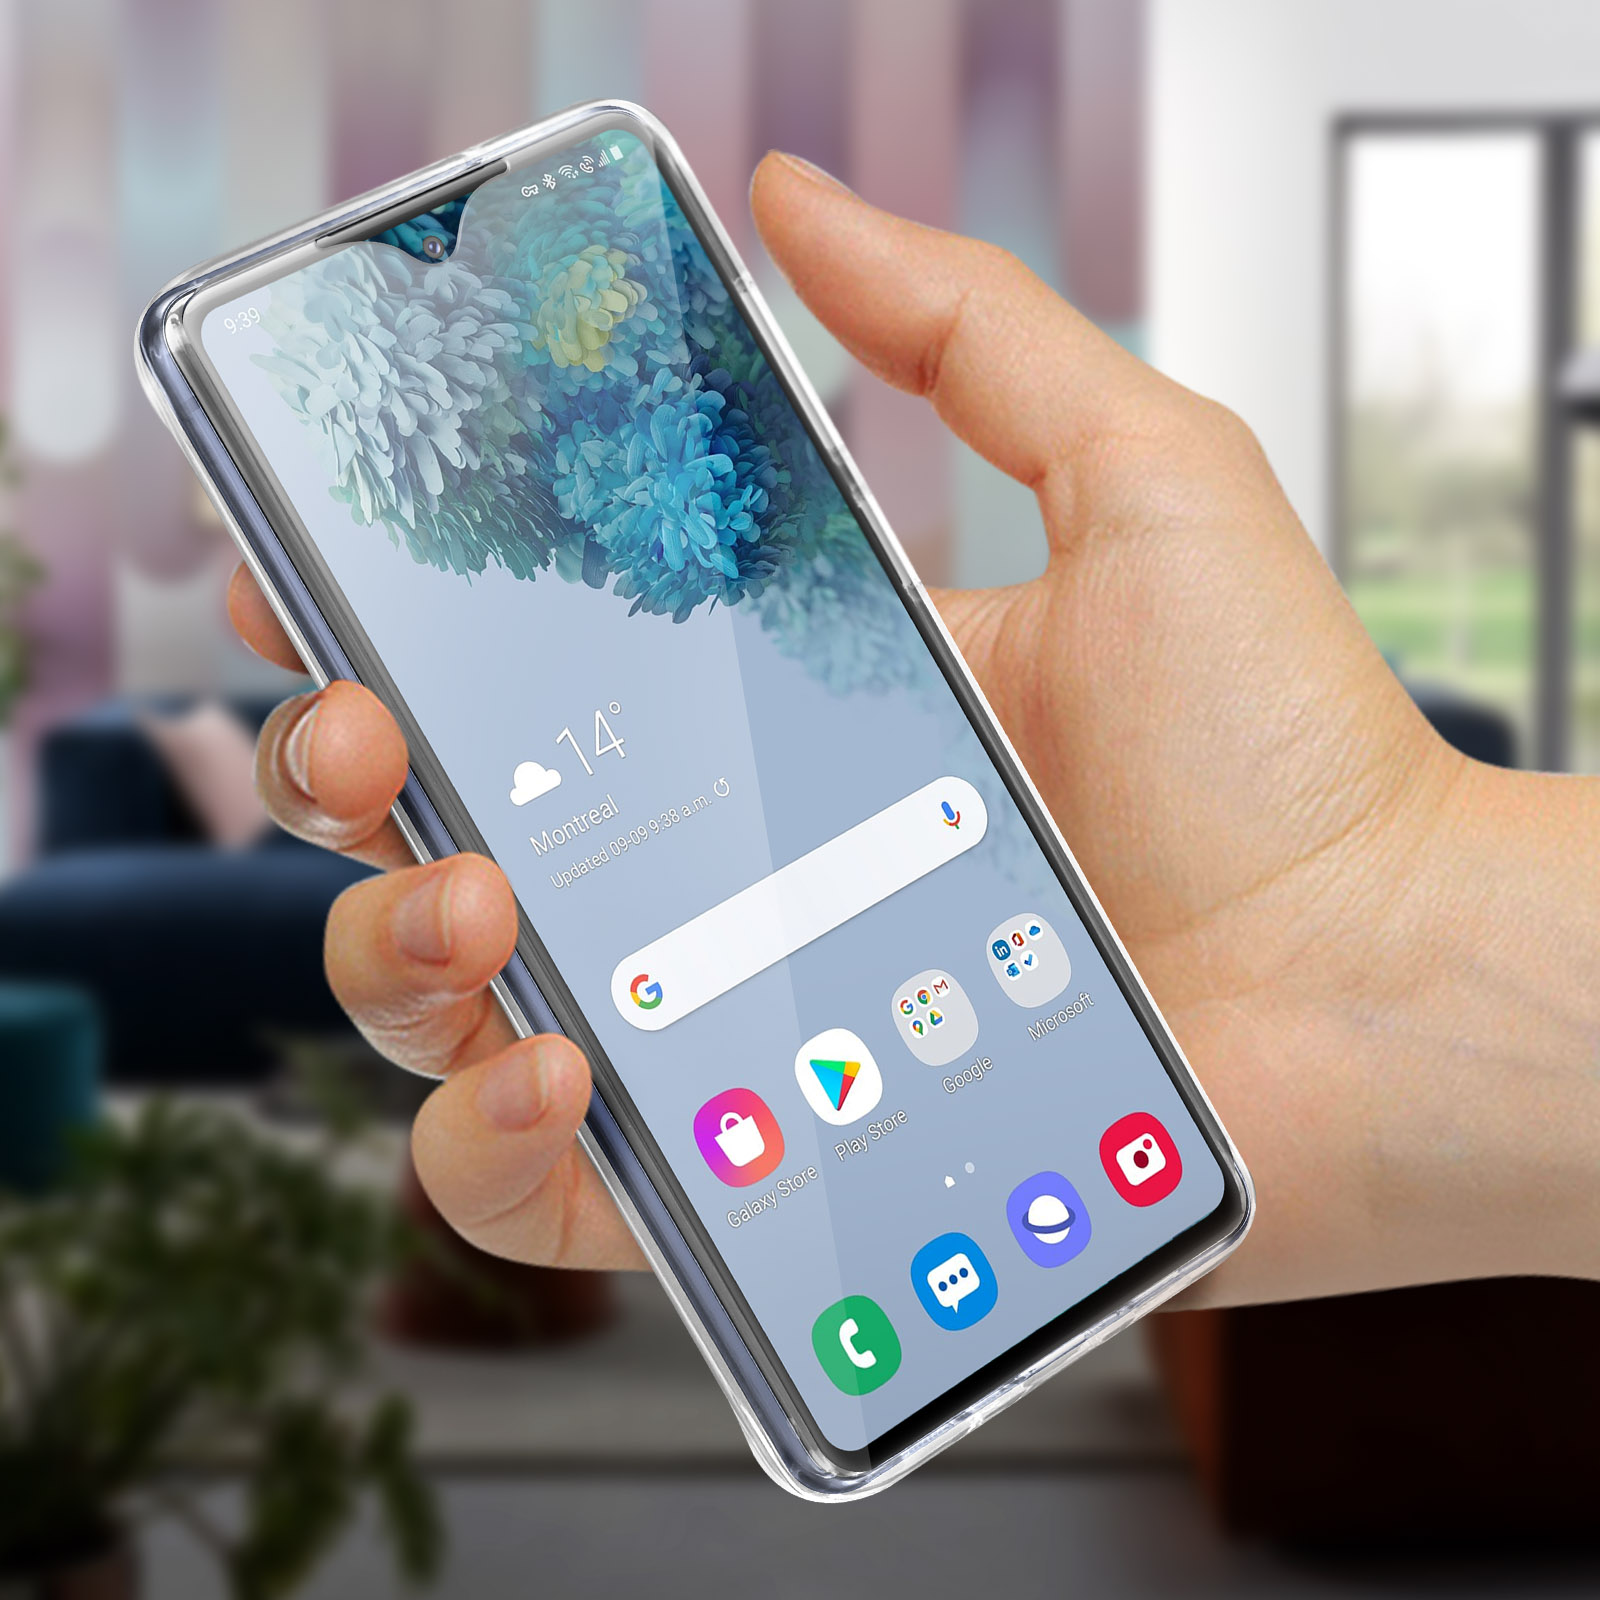 Coque Samsung S20 FE Intégrale 360° : Avant Souple et Arrière Rigide -  Transparent - Français